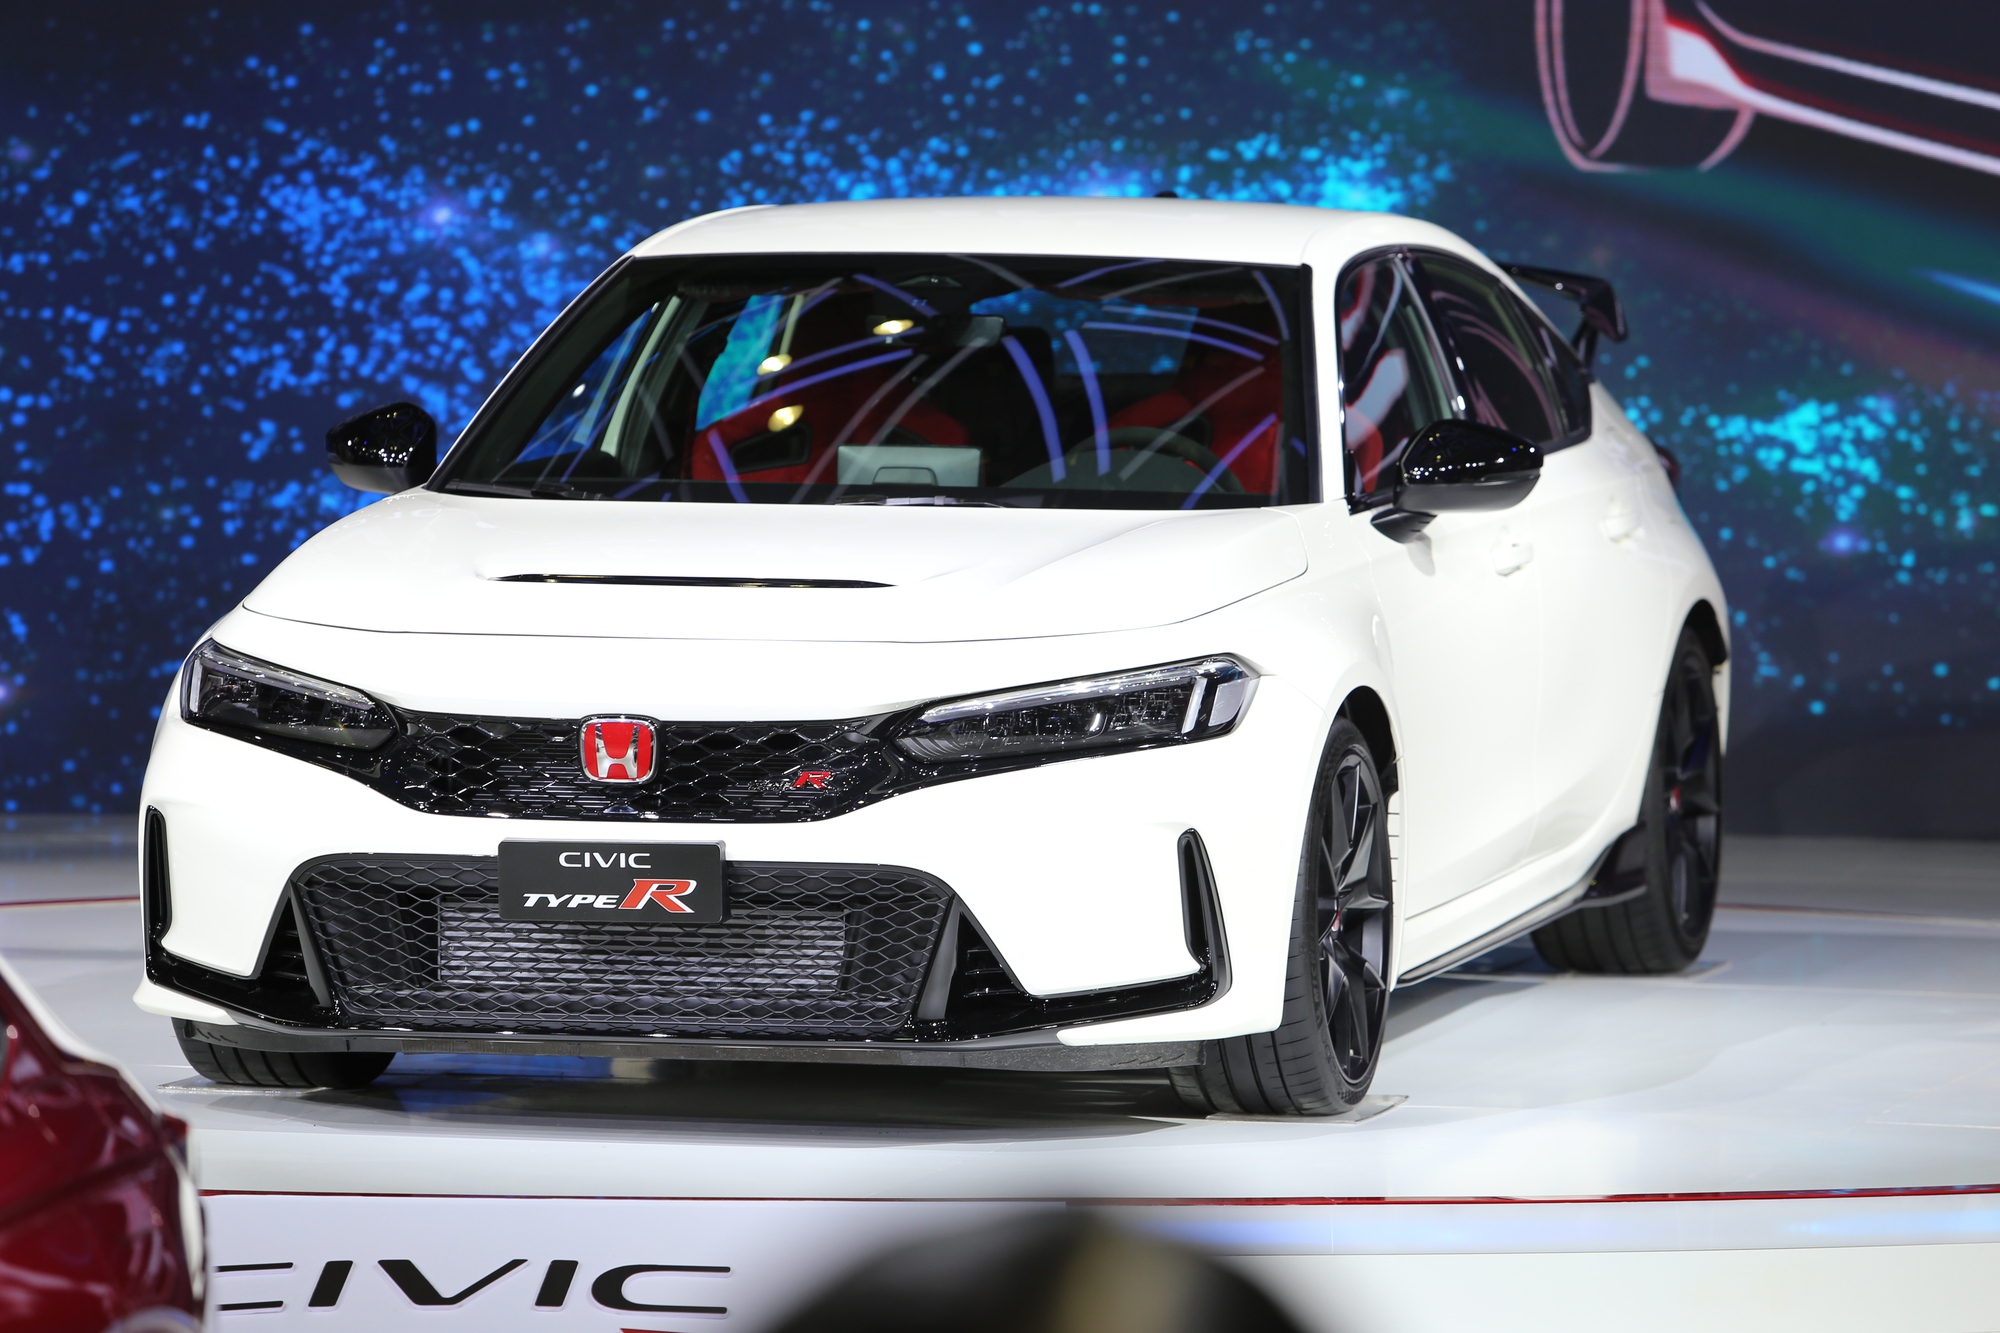 Honda Civic Type R lộ trang bị tại Việt Nam: Gần 'full option' so với thị trường quốc tế - Ảnh 2.